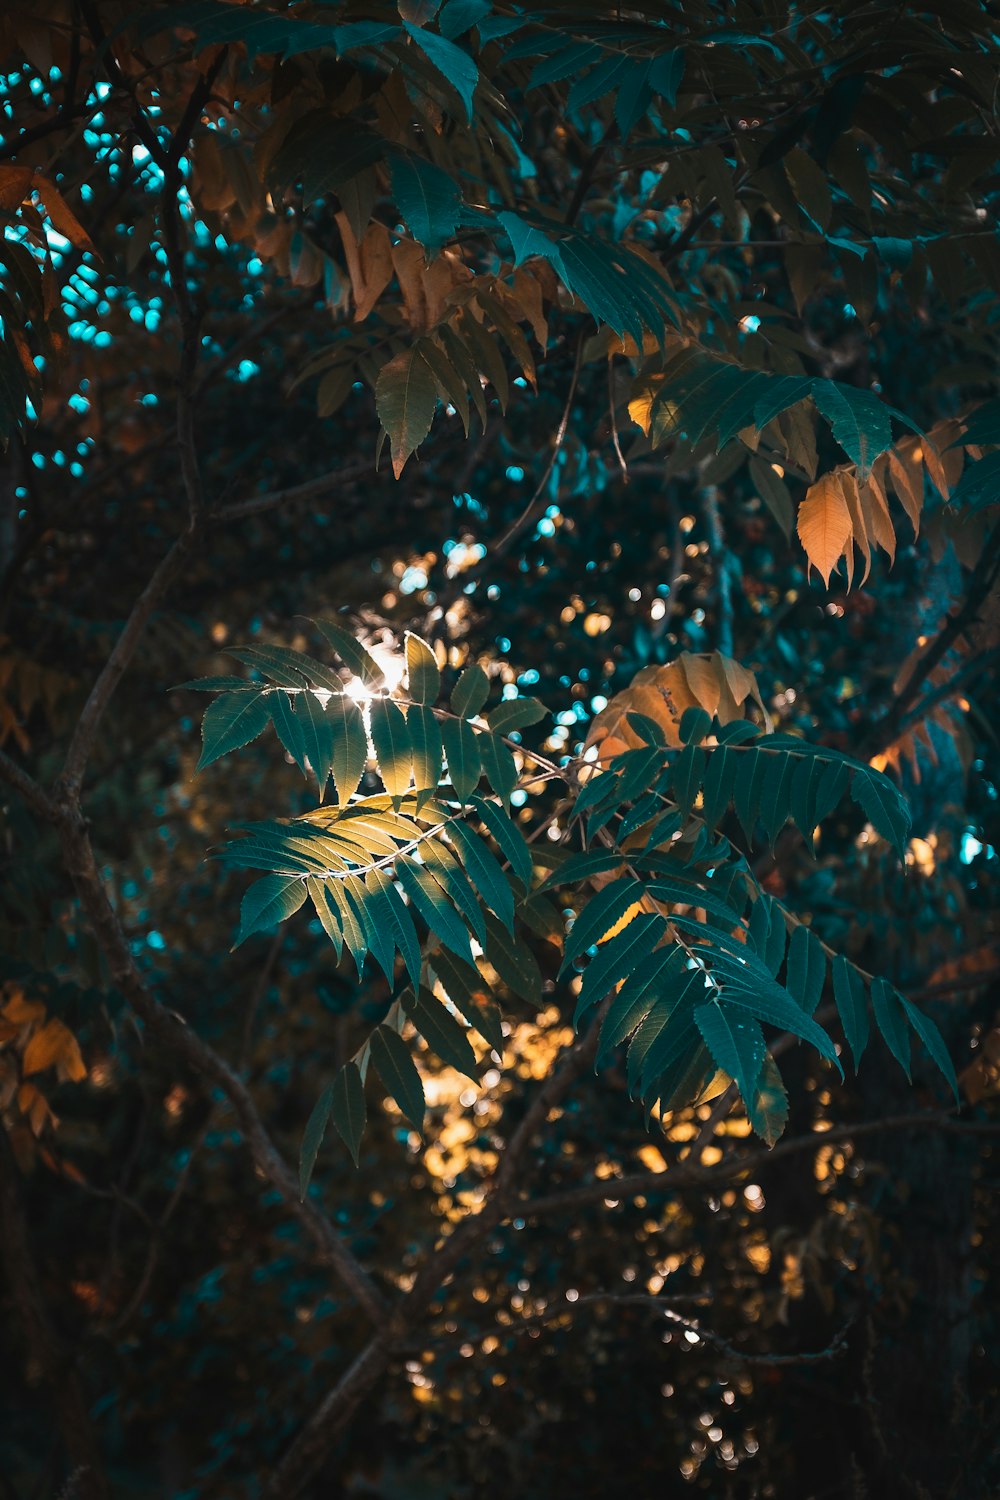 luz solar brilhando através das folhas de uma árvore